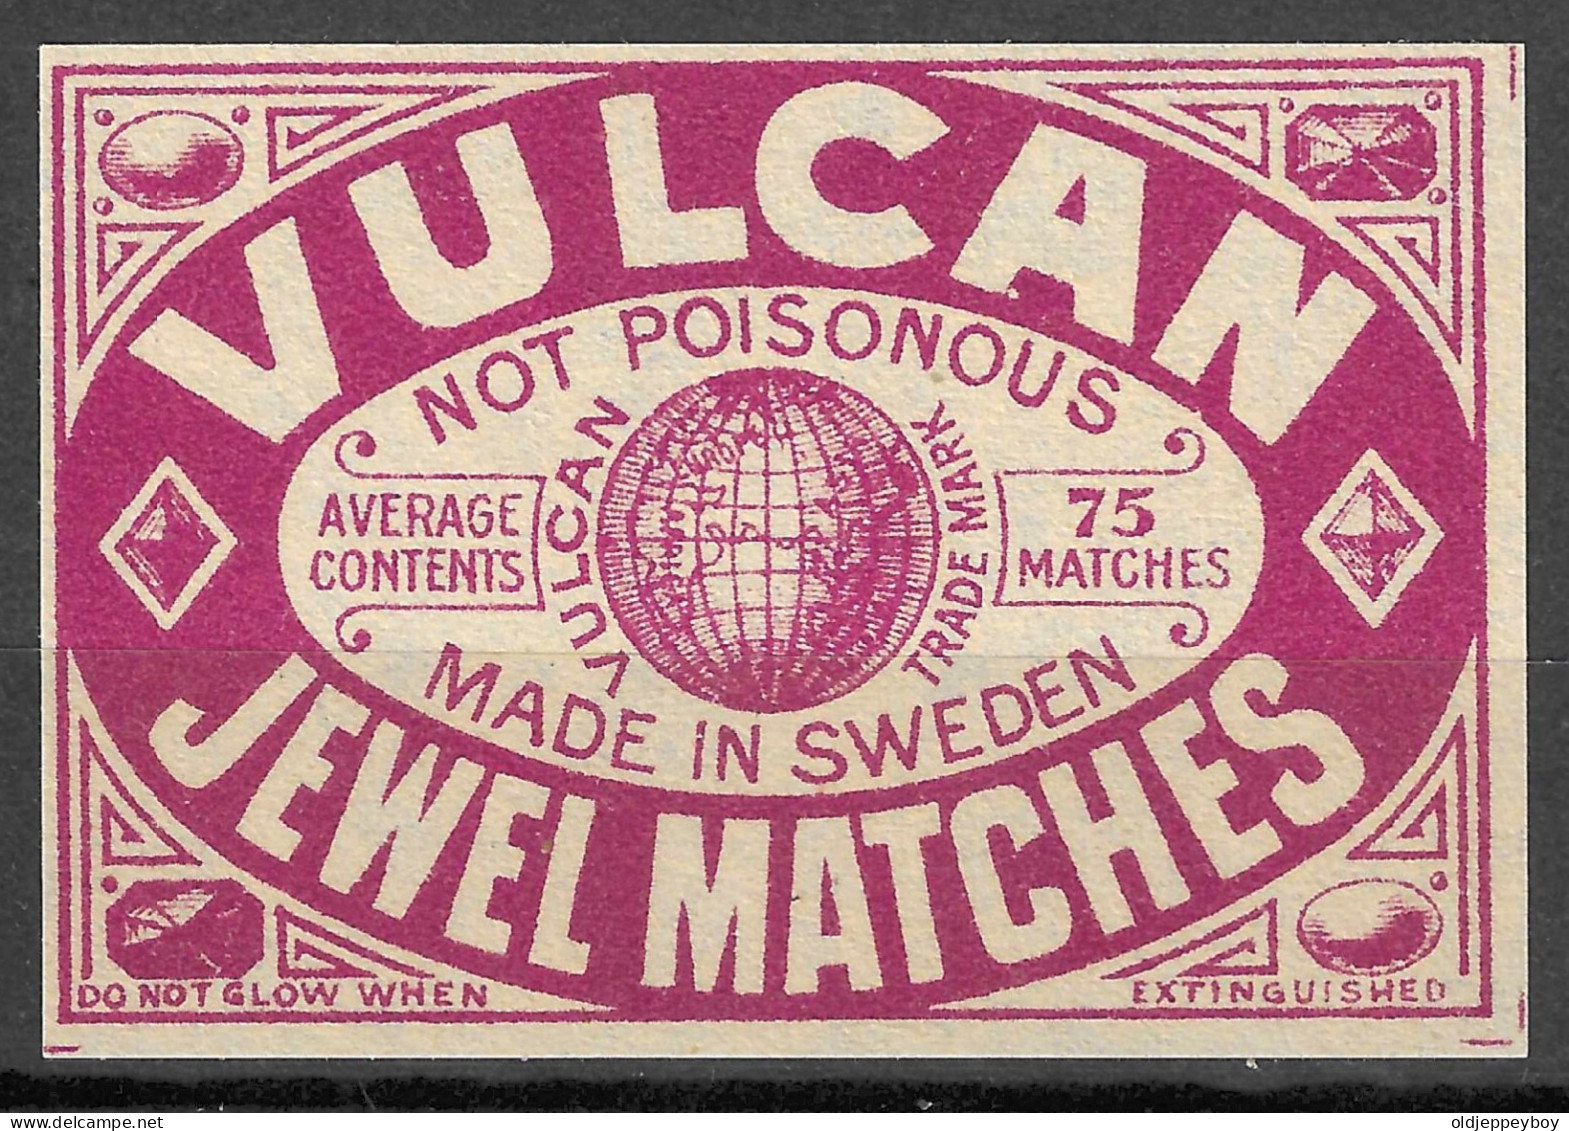  MADE  IN SWEDEN   VINTAGE Phillumeny MATCHBOX LABEL VULCAN JEWEL MATCHES  6.5  X 4.5 CM  RARE - Luciferdozen - Etiketten